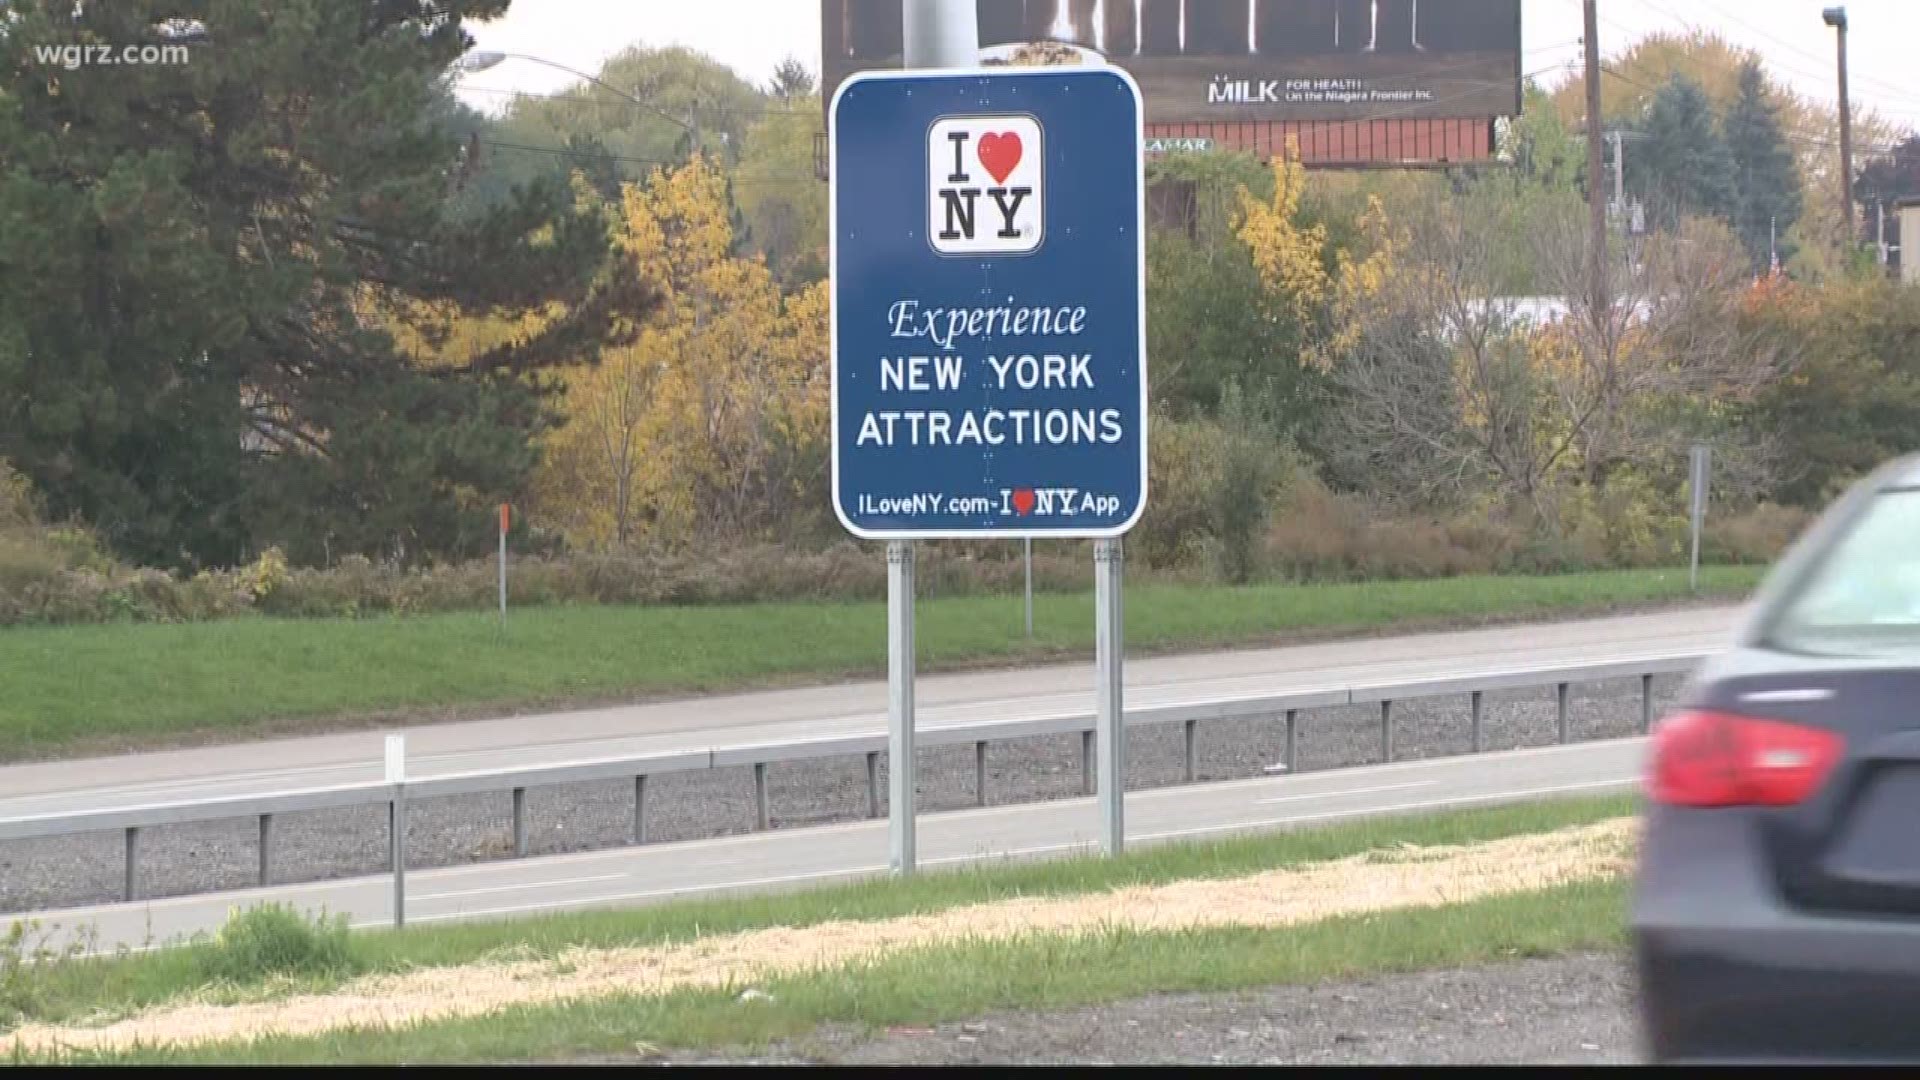 "I Love NY" Signs Cost NY $14 Million